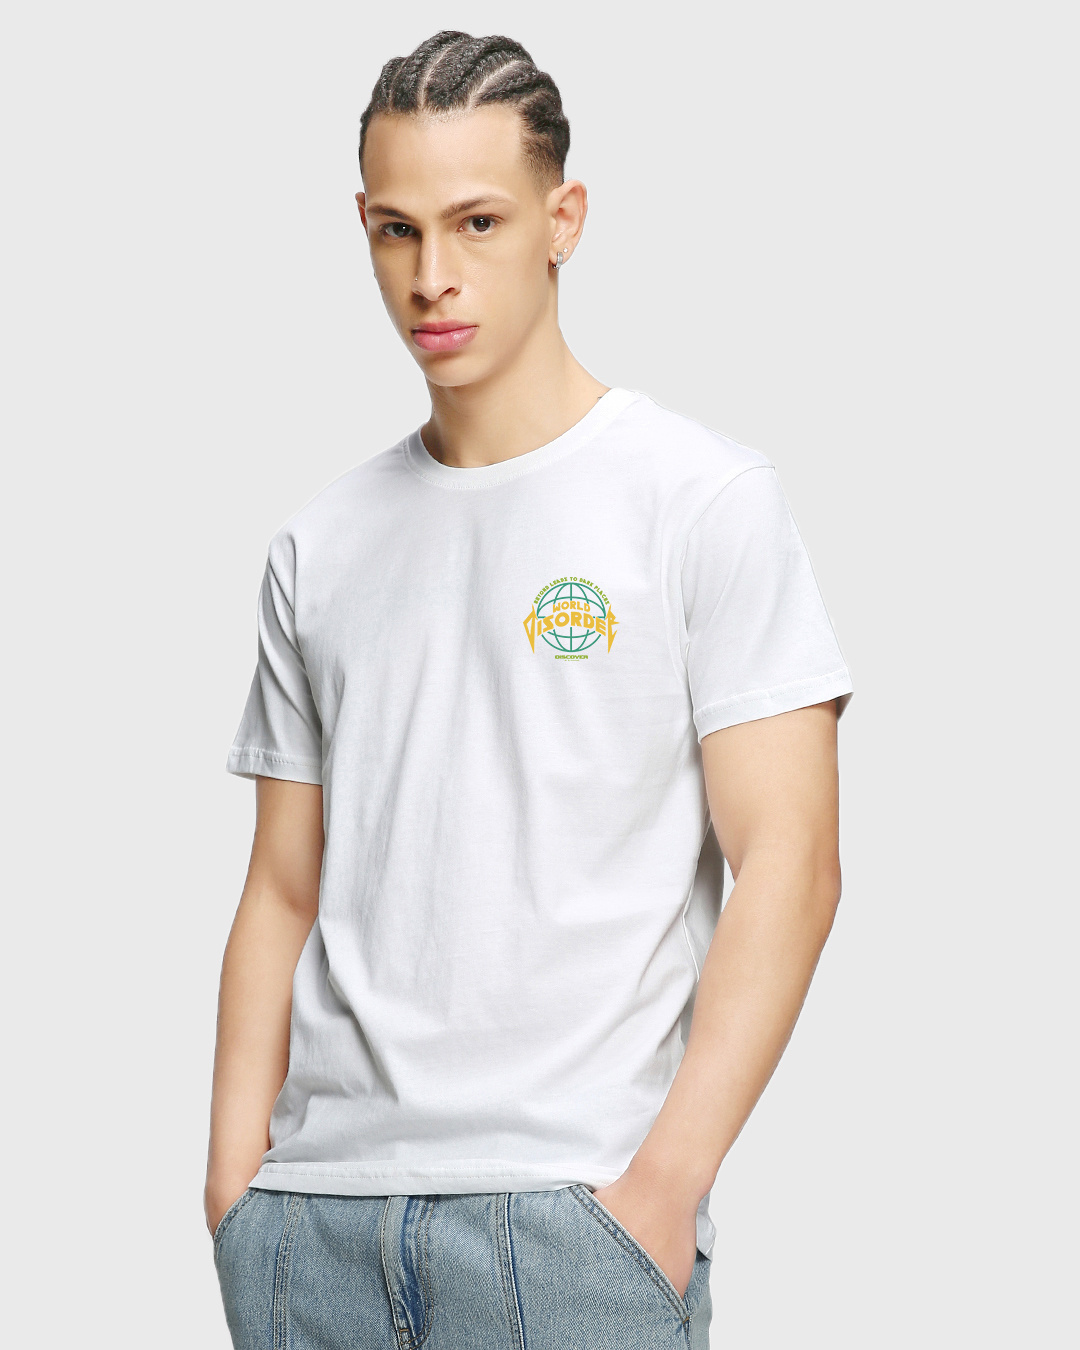 Buy Men's White World Disorder Graphic Printed T-shirt Online at Bewakoof